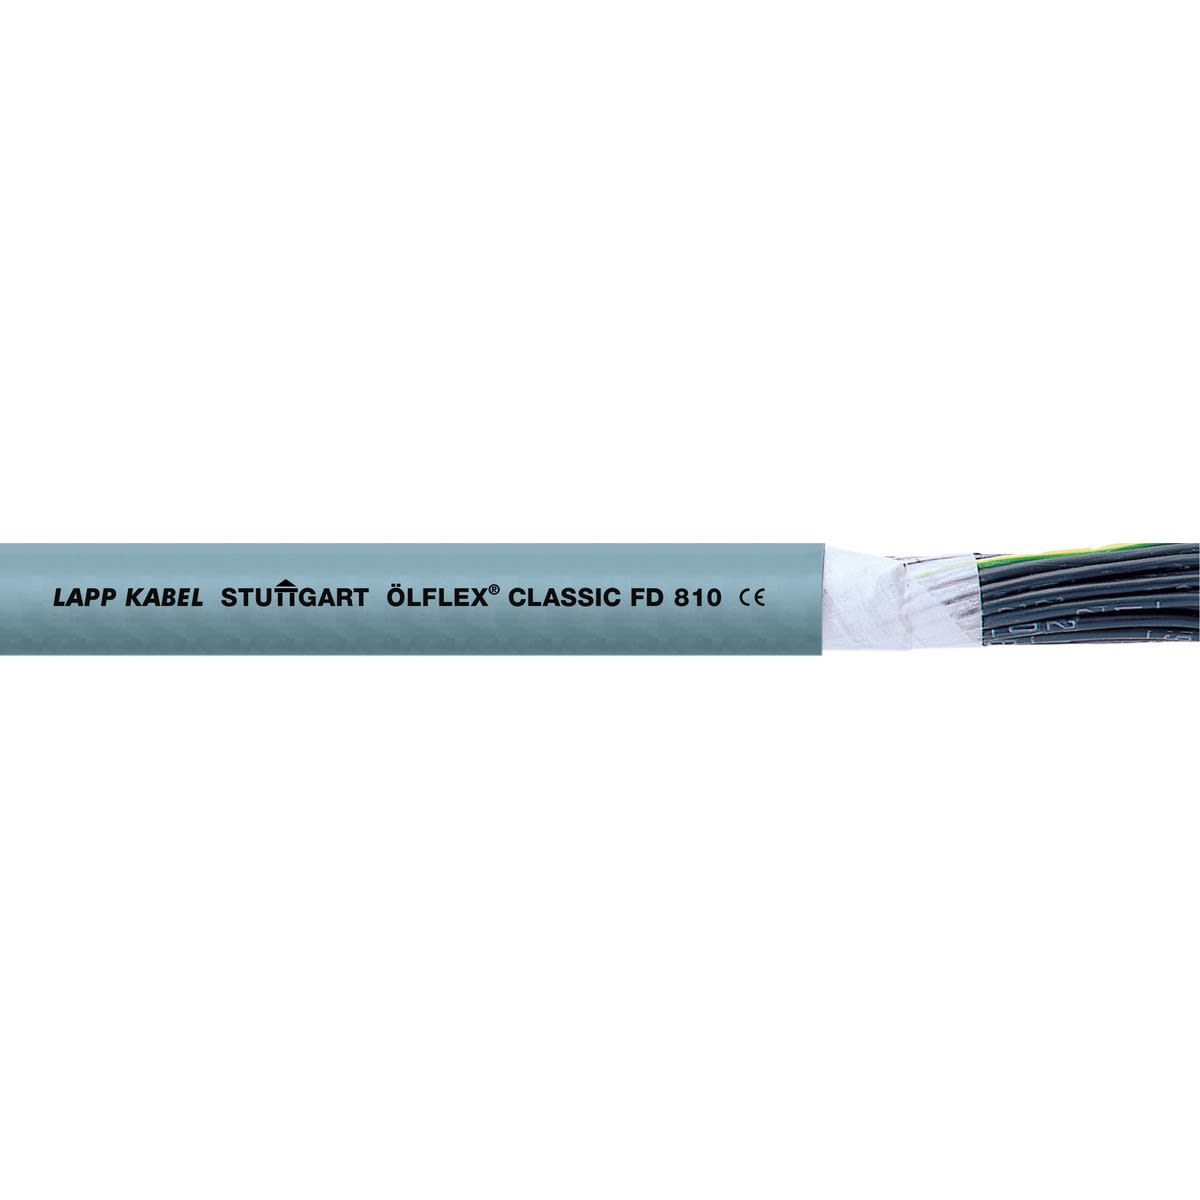 Lapp - ÖLFLEX CLASSIC FD 810 5G16